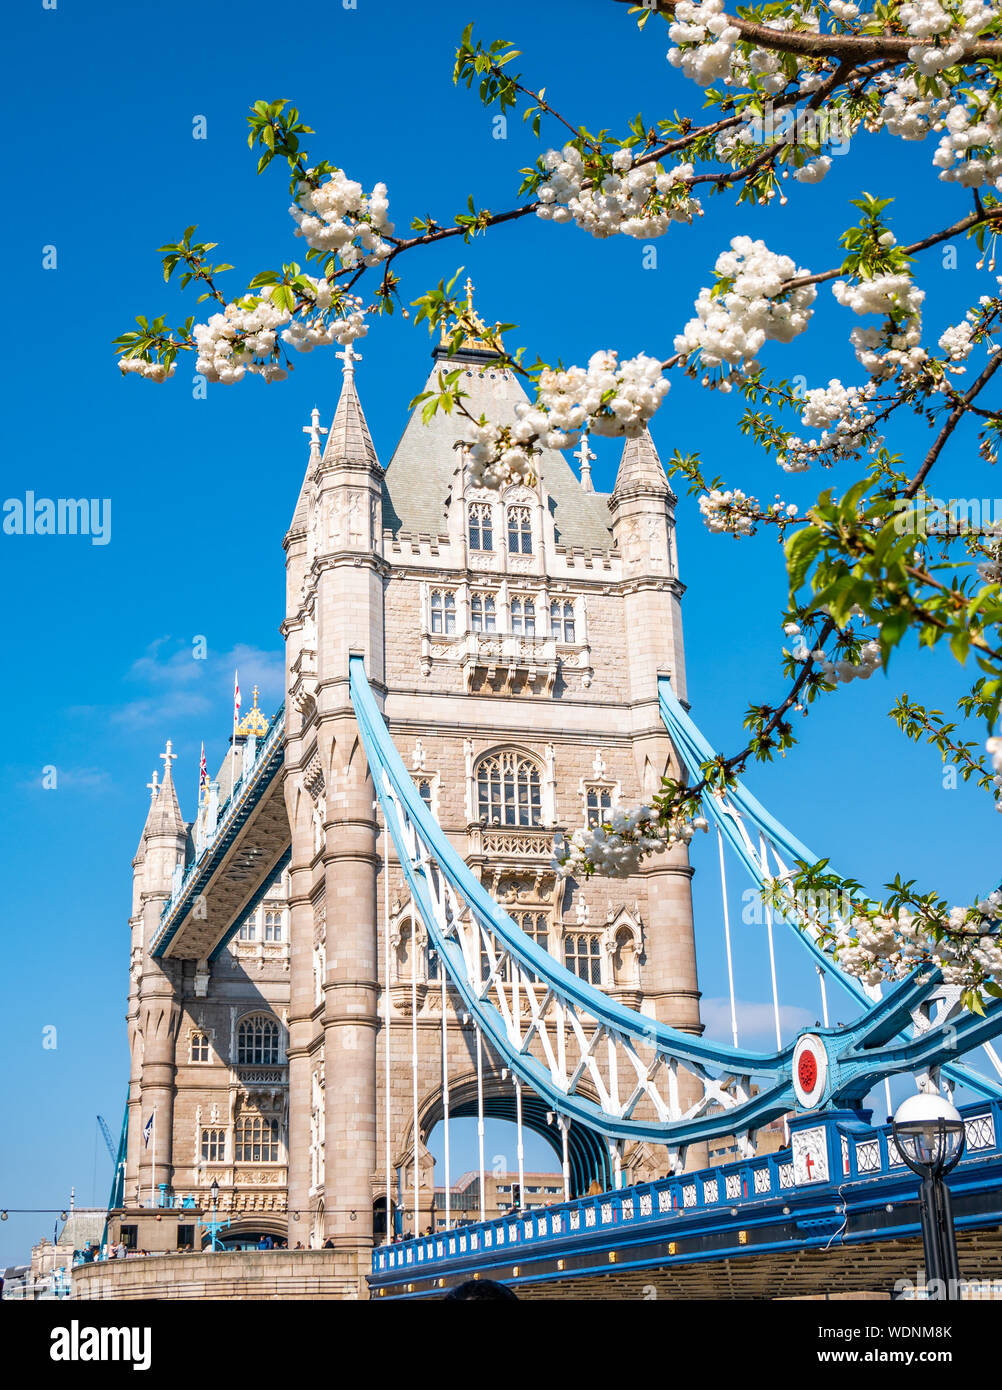 Wahrzeichen von London Tower Bridge im Frühjahr Saison mit weißen apple tree Blumen in Komposition - England, Vereinigtes Königreich Stockfoto